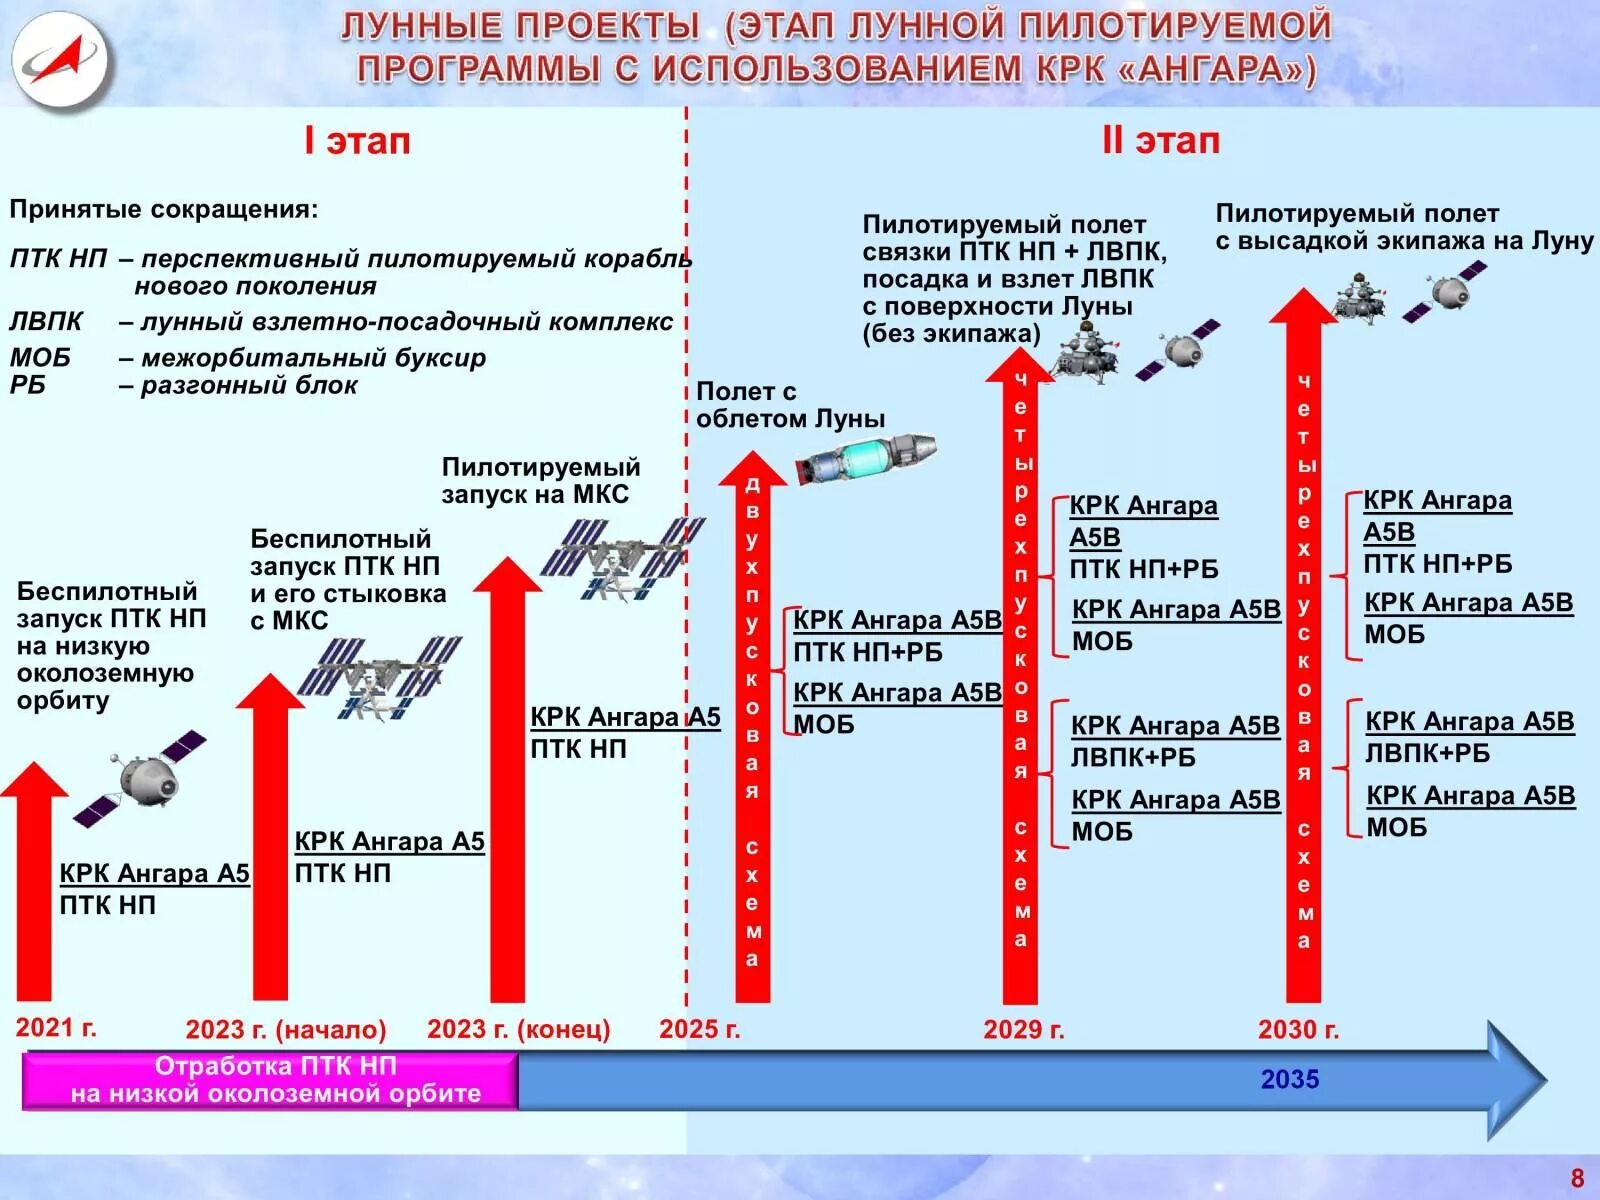 Программа 2 февраля 2023. Российская Лунная программа. Российская Лунная программа 2 этап. Лунный взлетно-посадочный комплекс. Роскосмос Лунная программа.